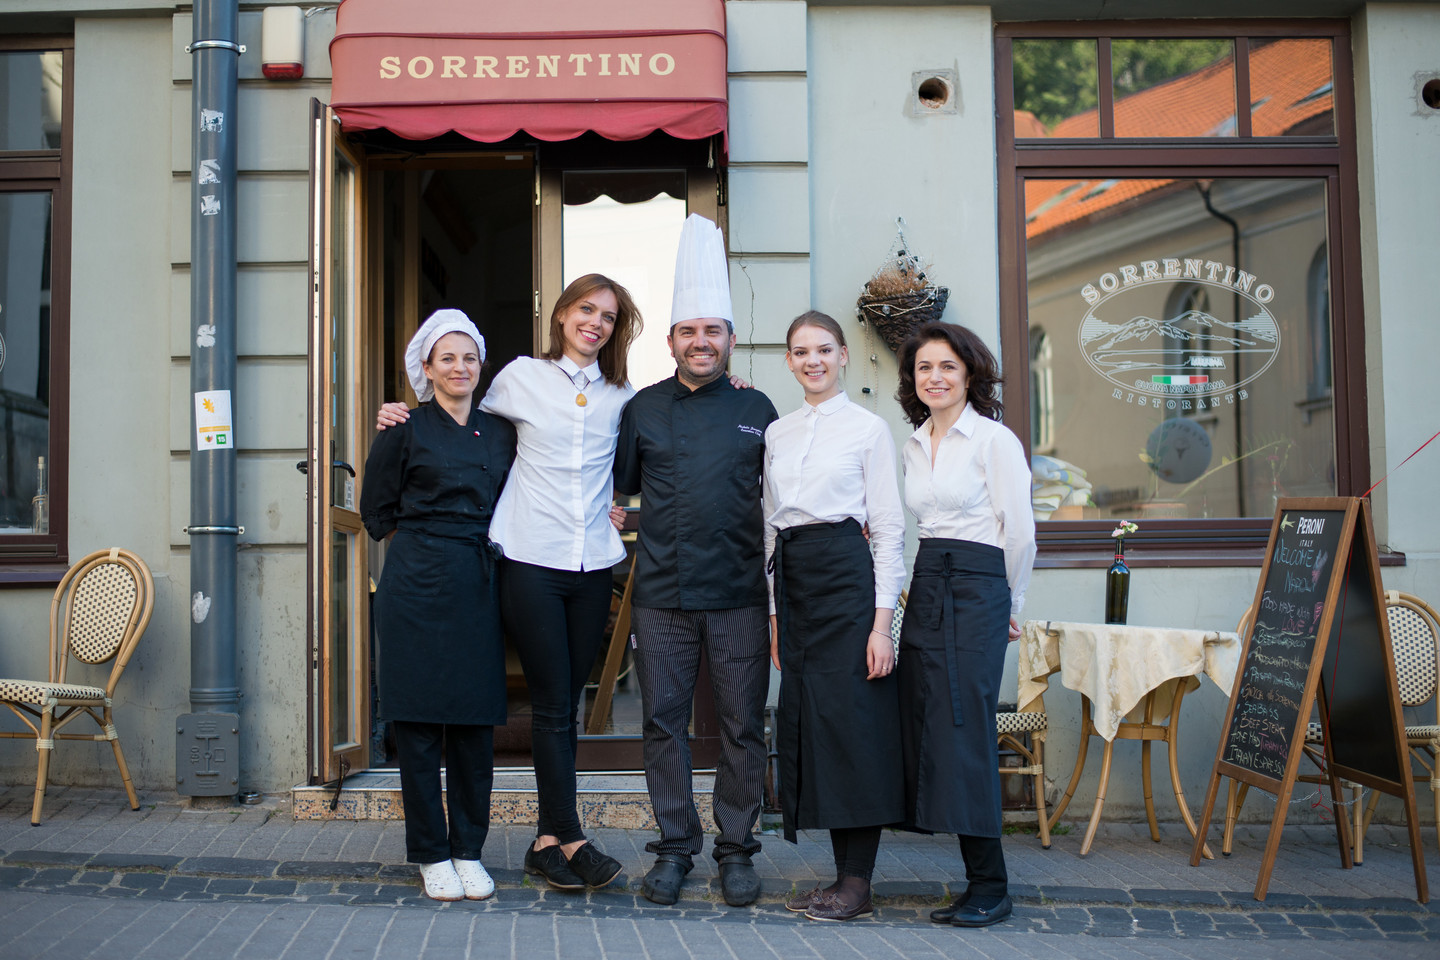 Restorano „Sorrentino“ savininkas ir šefas Michele Sorrentino su mylimąja Kristina (antra iš kairės) ir personalu. <br>J.Stacevičiaus nuotr.